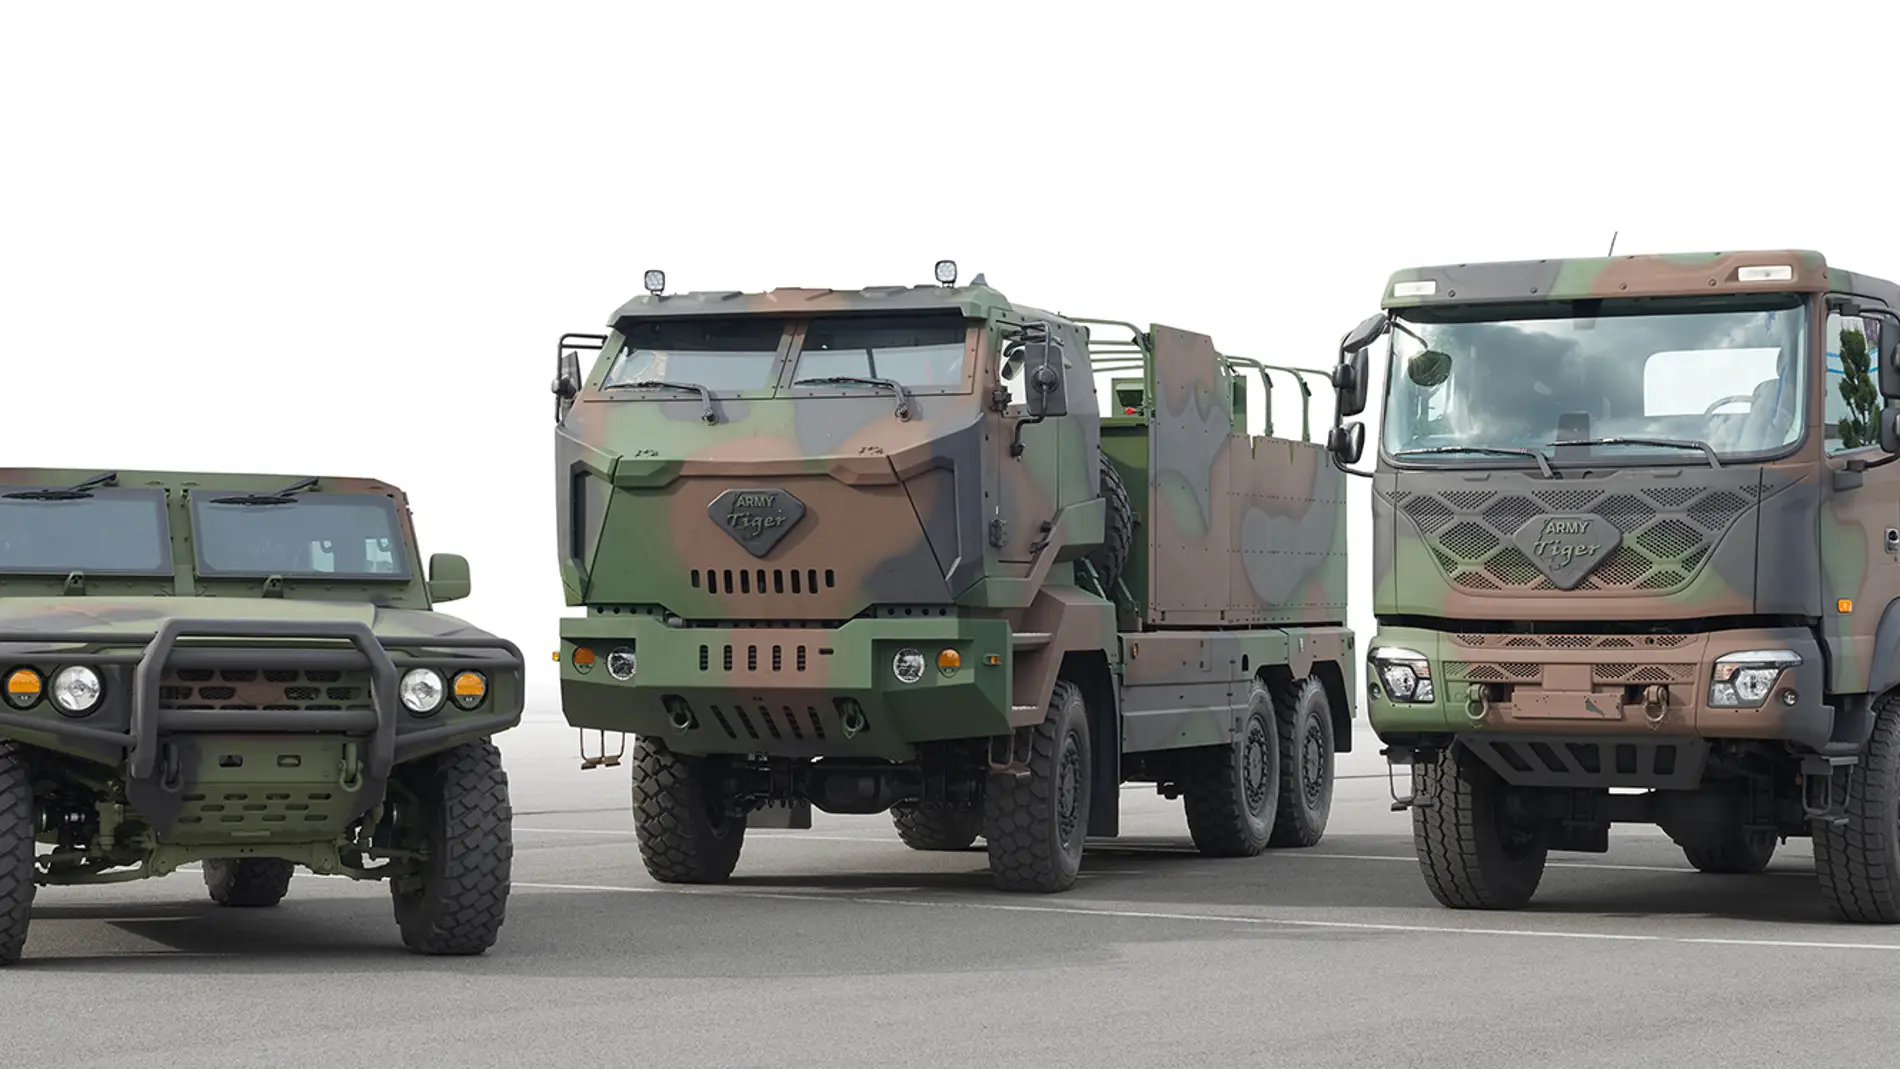 KIA planea fabricar la próxima generación de vehículos militares